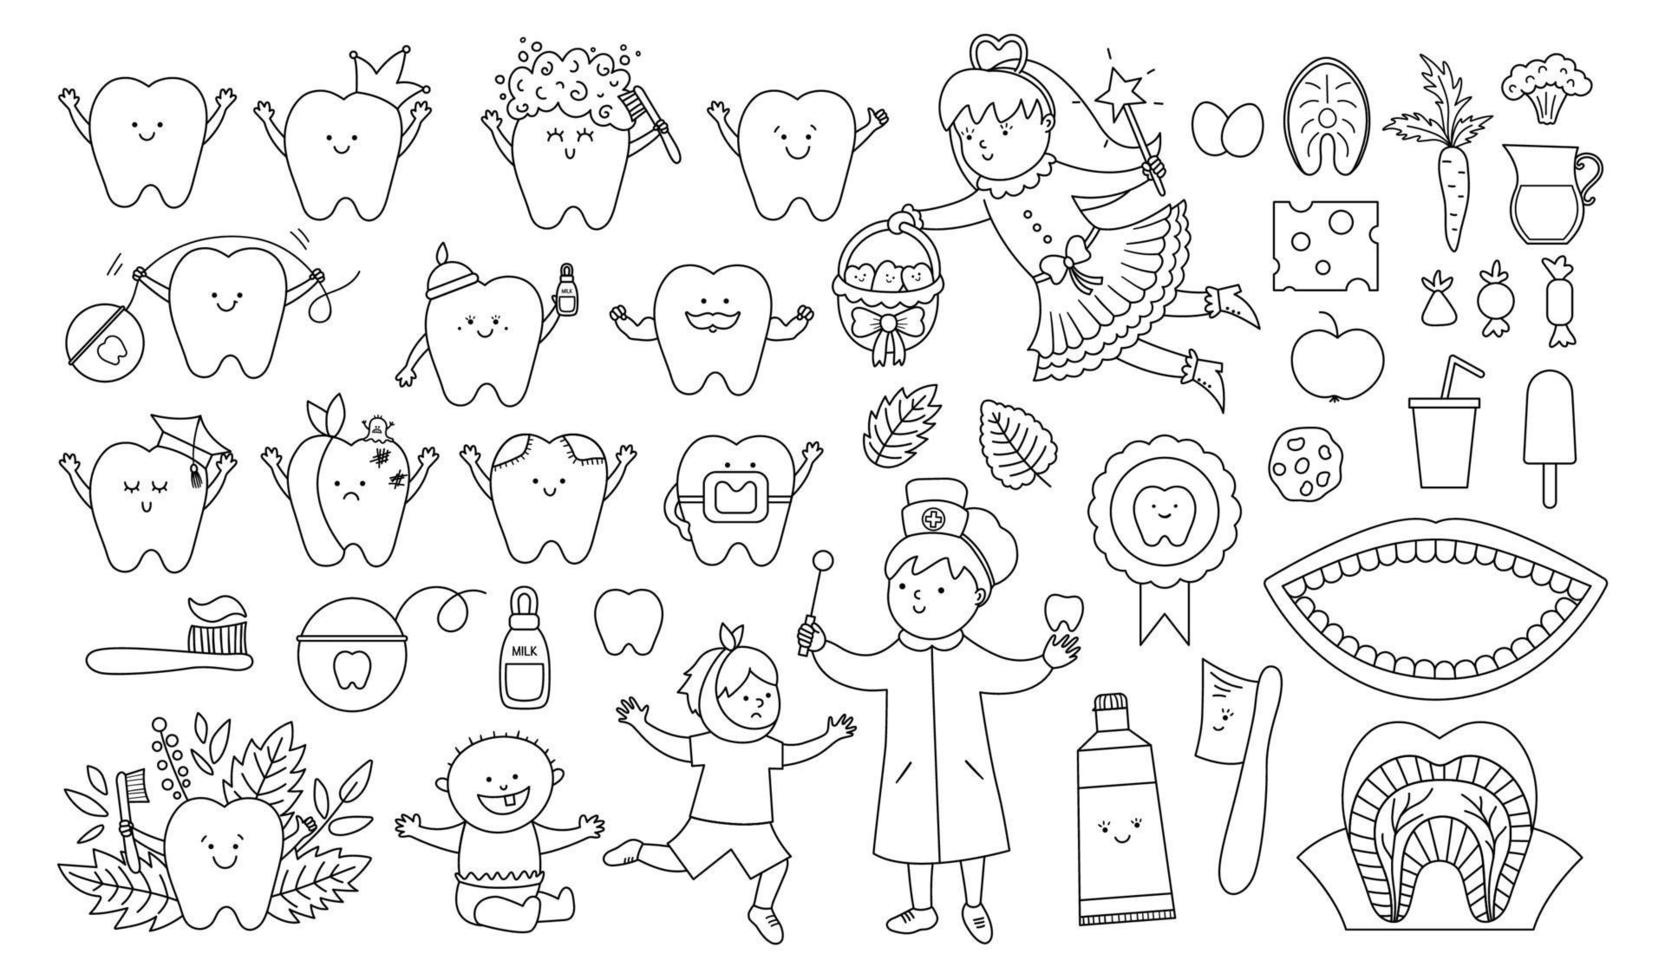 Schwarz-Weiß-Zahnpflege-Vektor-Set. skizzensammlung mit zahnfee, lächelnder zahnbürste, zähnen, zahnarzt, zahnklinik, werkzeugen. großes stomatologie-elementpaket für kinder. Symbole für die Mundhygiene-Linie vektor